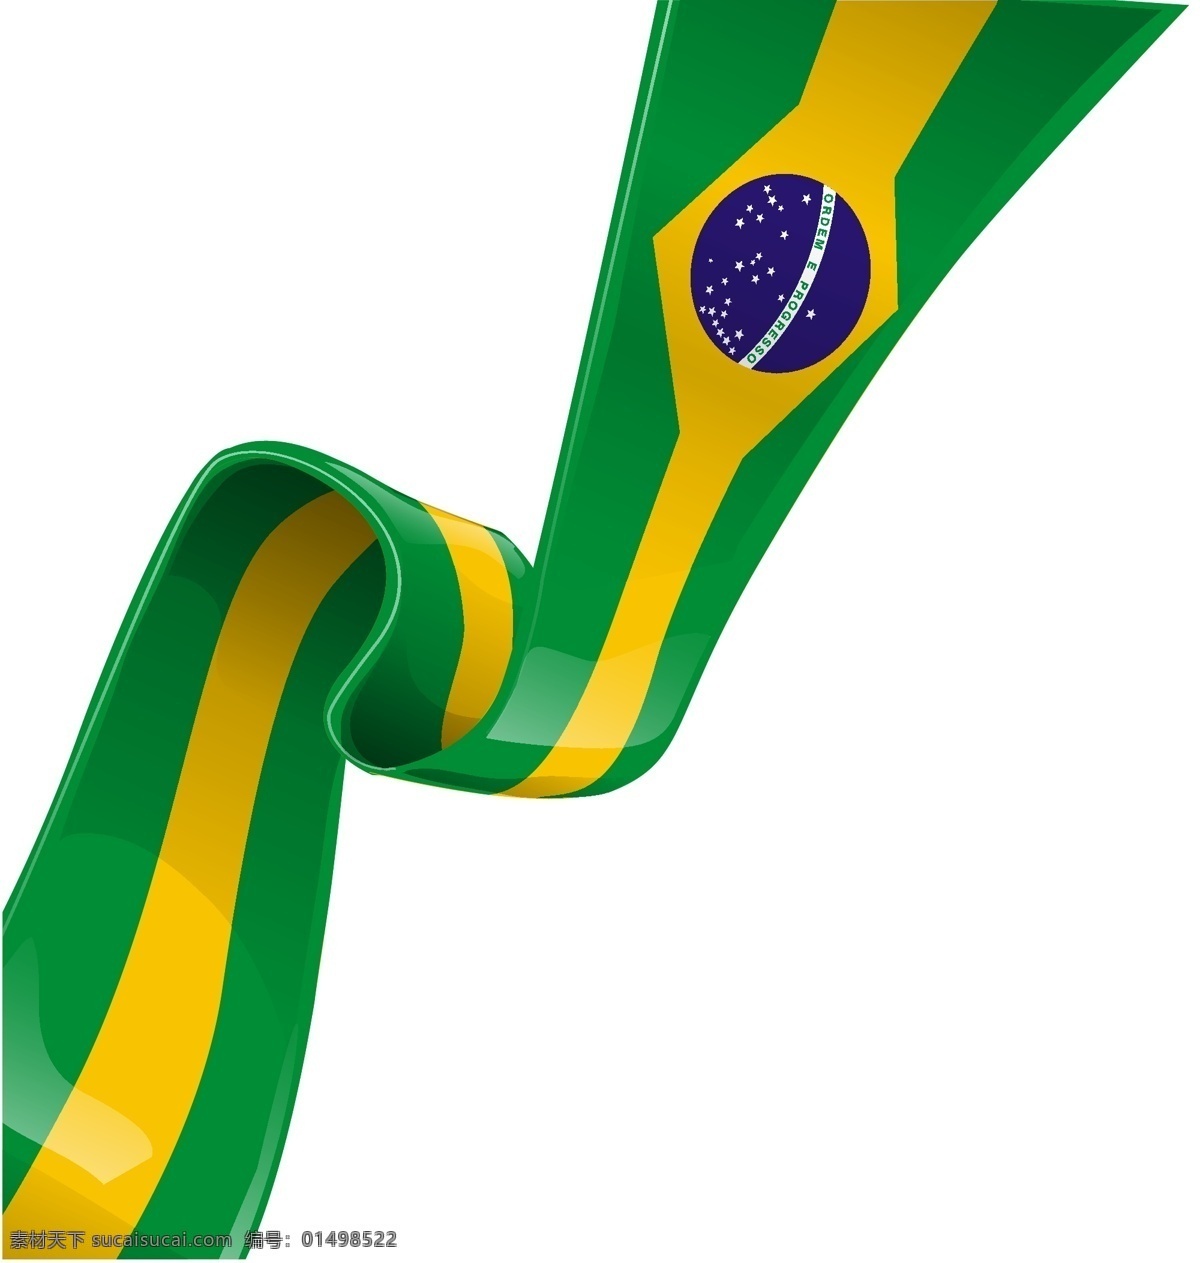 巴西 巴西国旗 矢量 丝带 国旗 模板下载 巴西素材 巴西元素 psd源文件